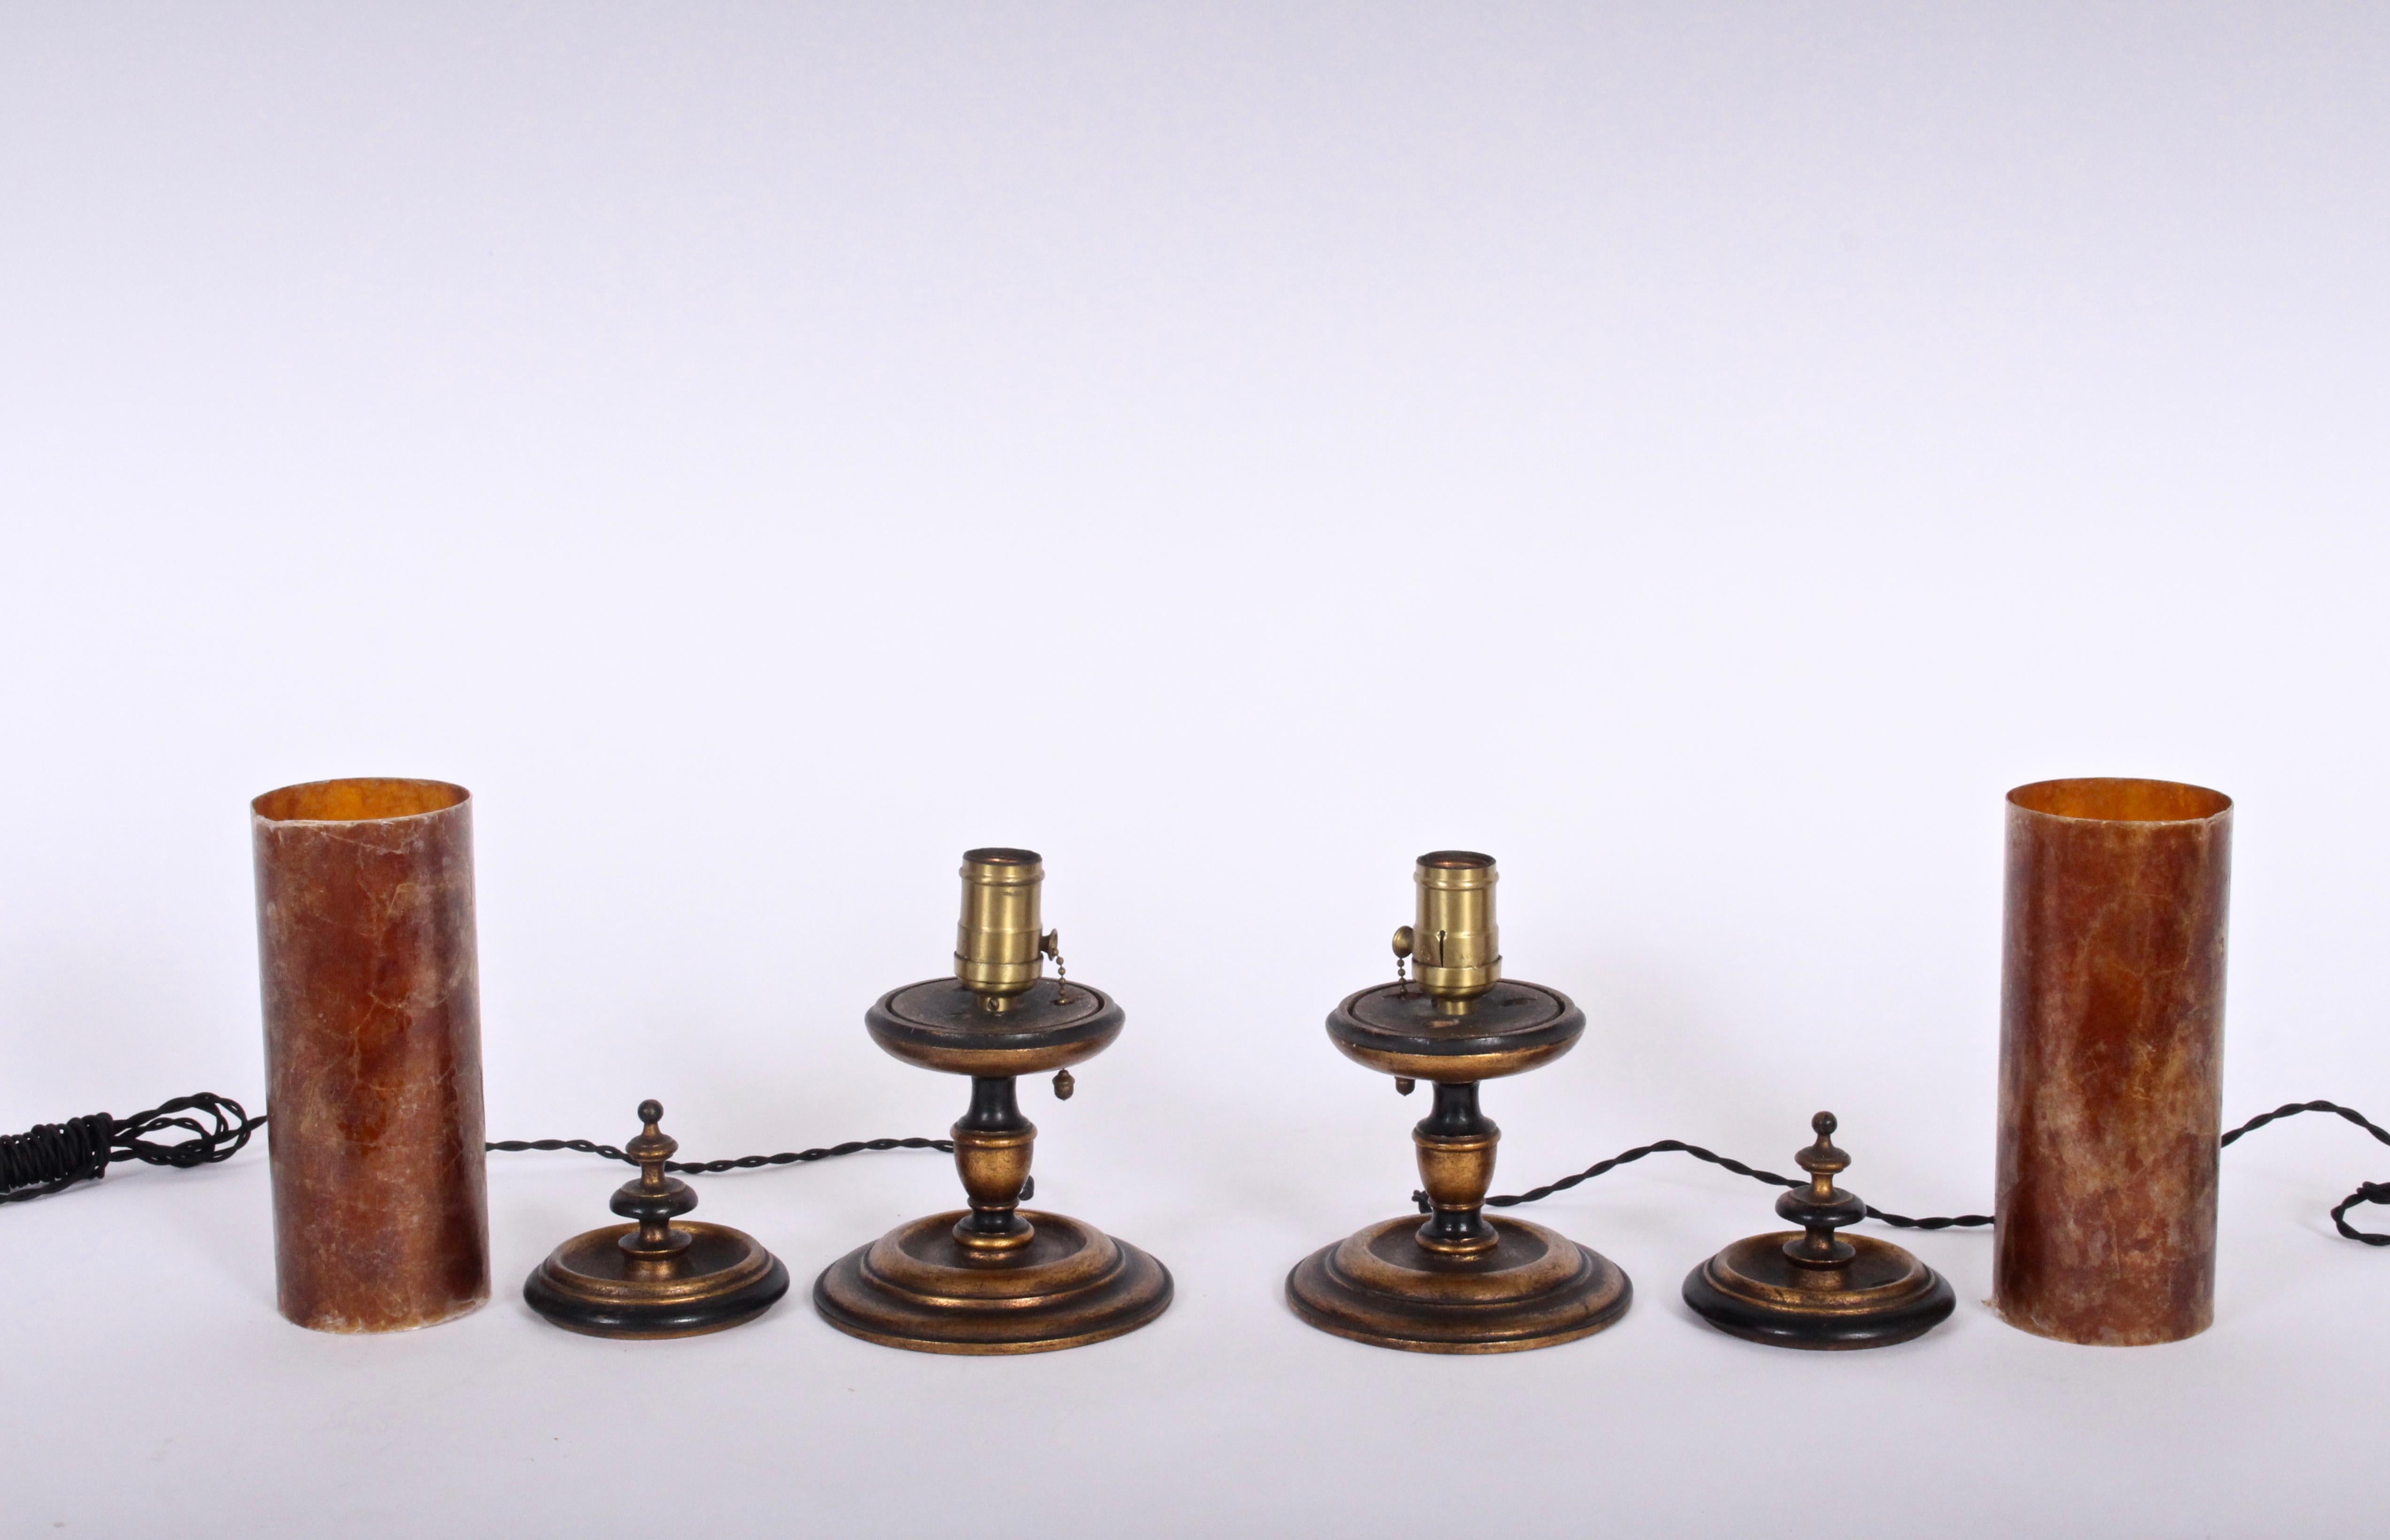 Kleineres Paar Tischlampen aus der Zeit des italienischen Neoklassizismus mit karminroten Glimmerschirmen, um 1920. Mit warmen, rötlich-orangen Glimmer-Zylinderschirmen (3 D x 8 H) mit rundem, antikvergoldetem Sockel und Deckel. Ketten ziehen. Kunst